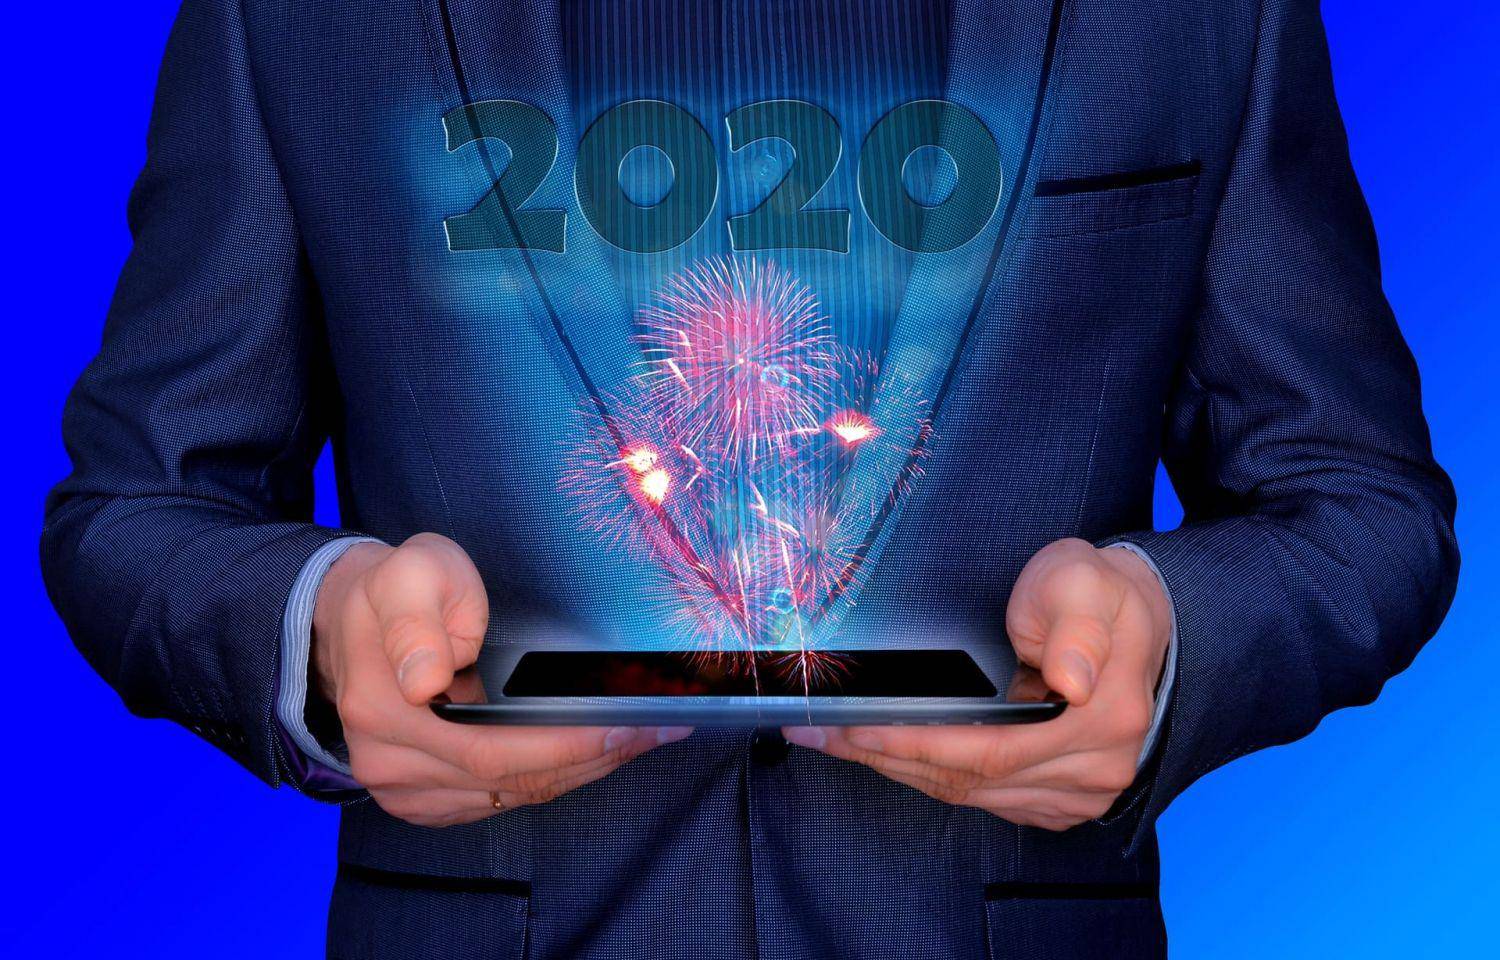 Удачный бизнес: 16 бизнес-идей заработка на даче в 2022 году